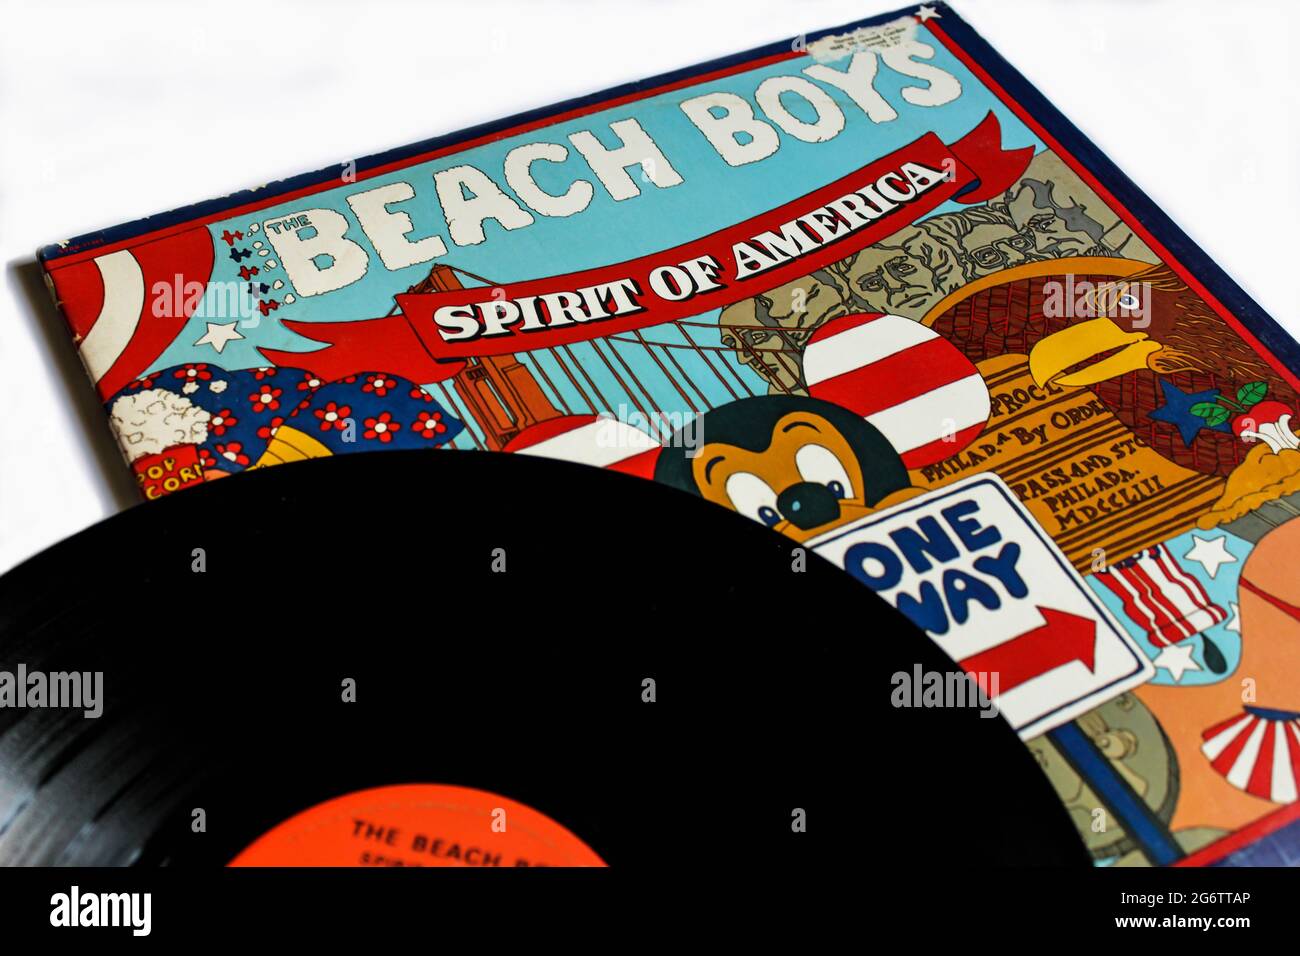 Klassische Rockband, das Beach Boys-Musikalbum auf Vinyl-LP-Schallplatte. Titelbild des Albums Spirit of America Stockfoto